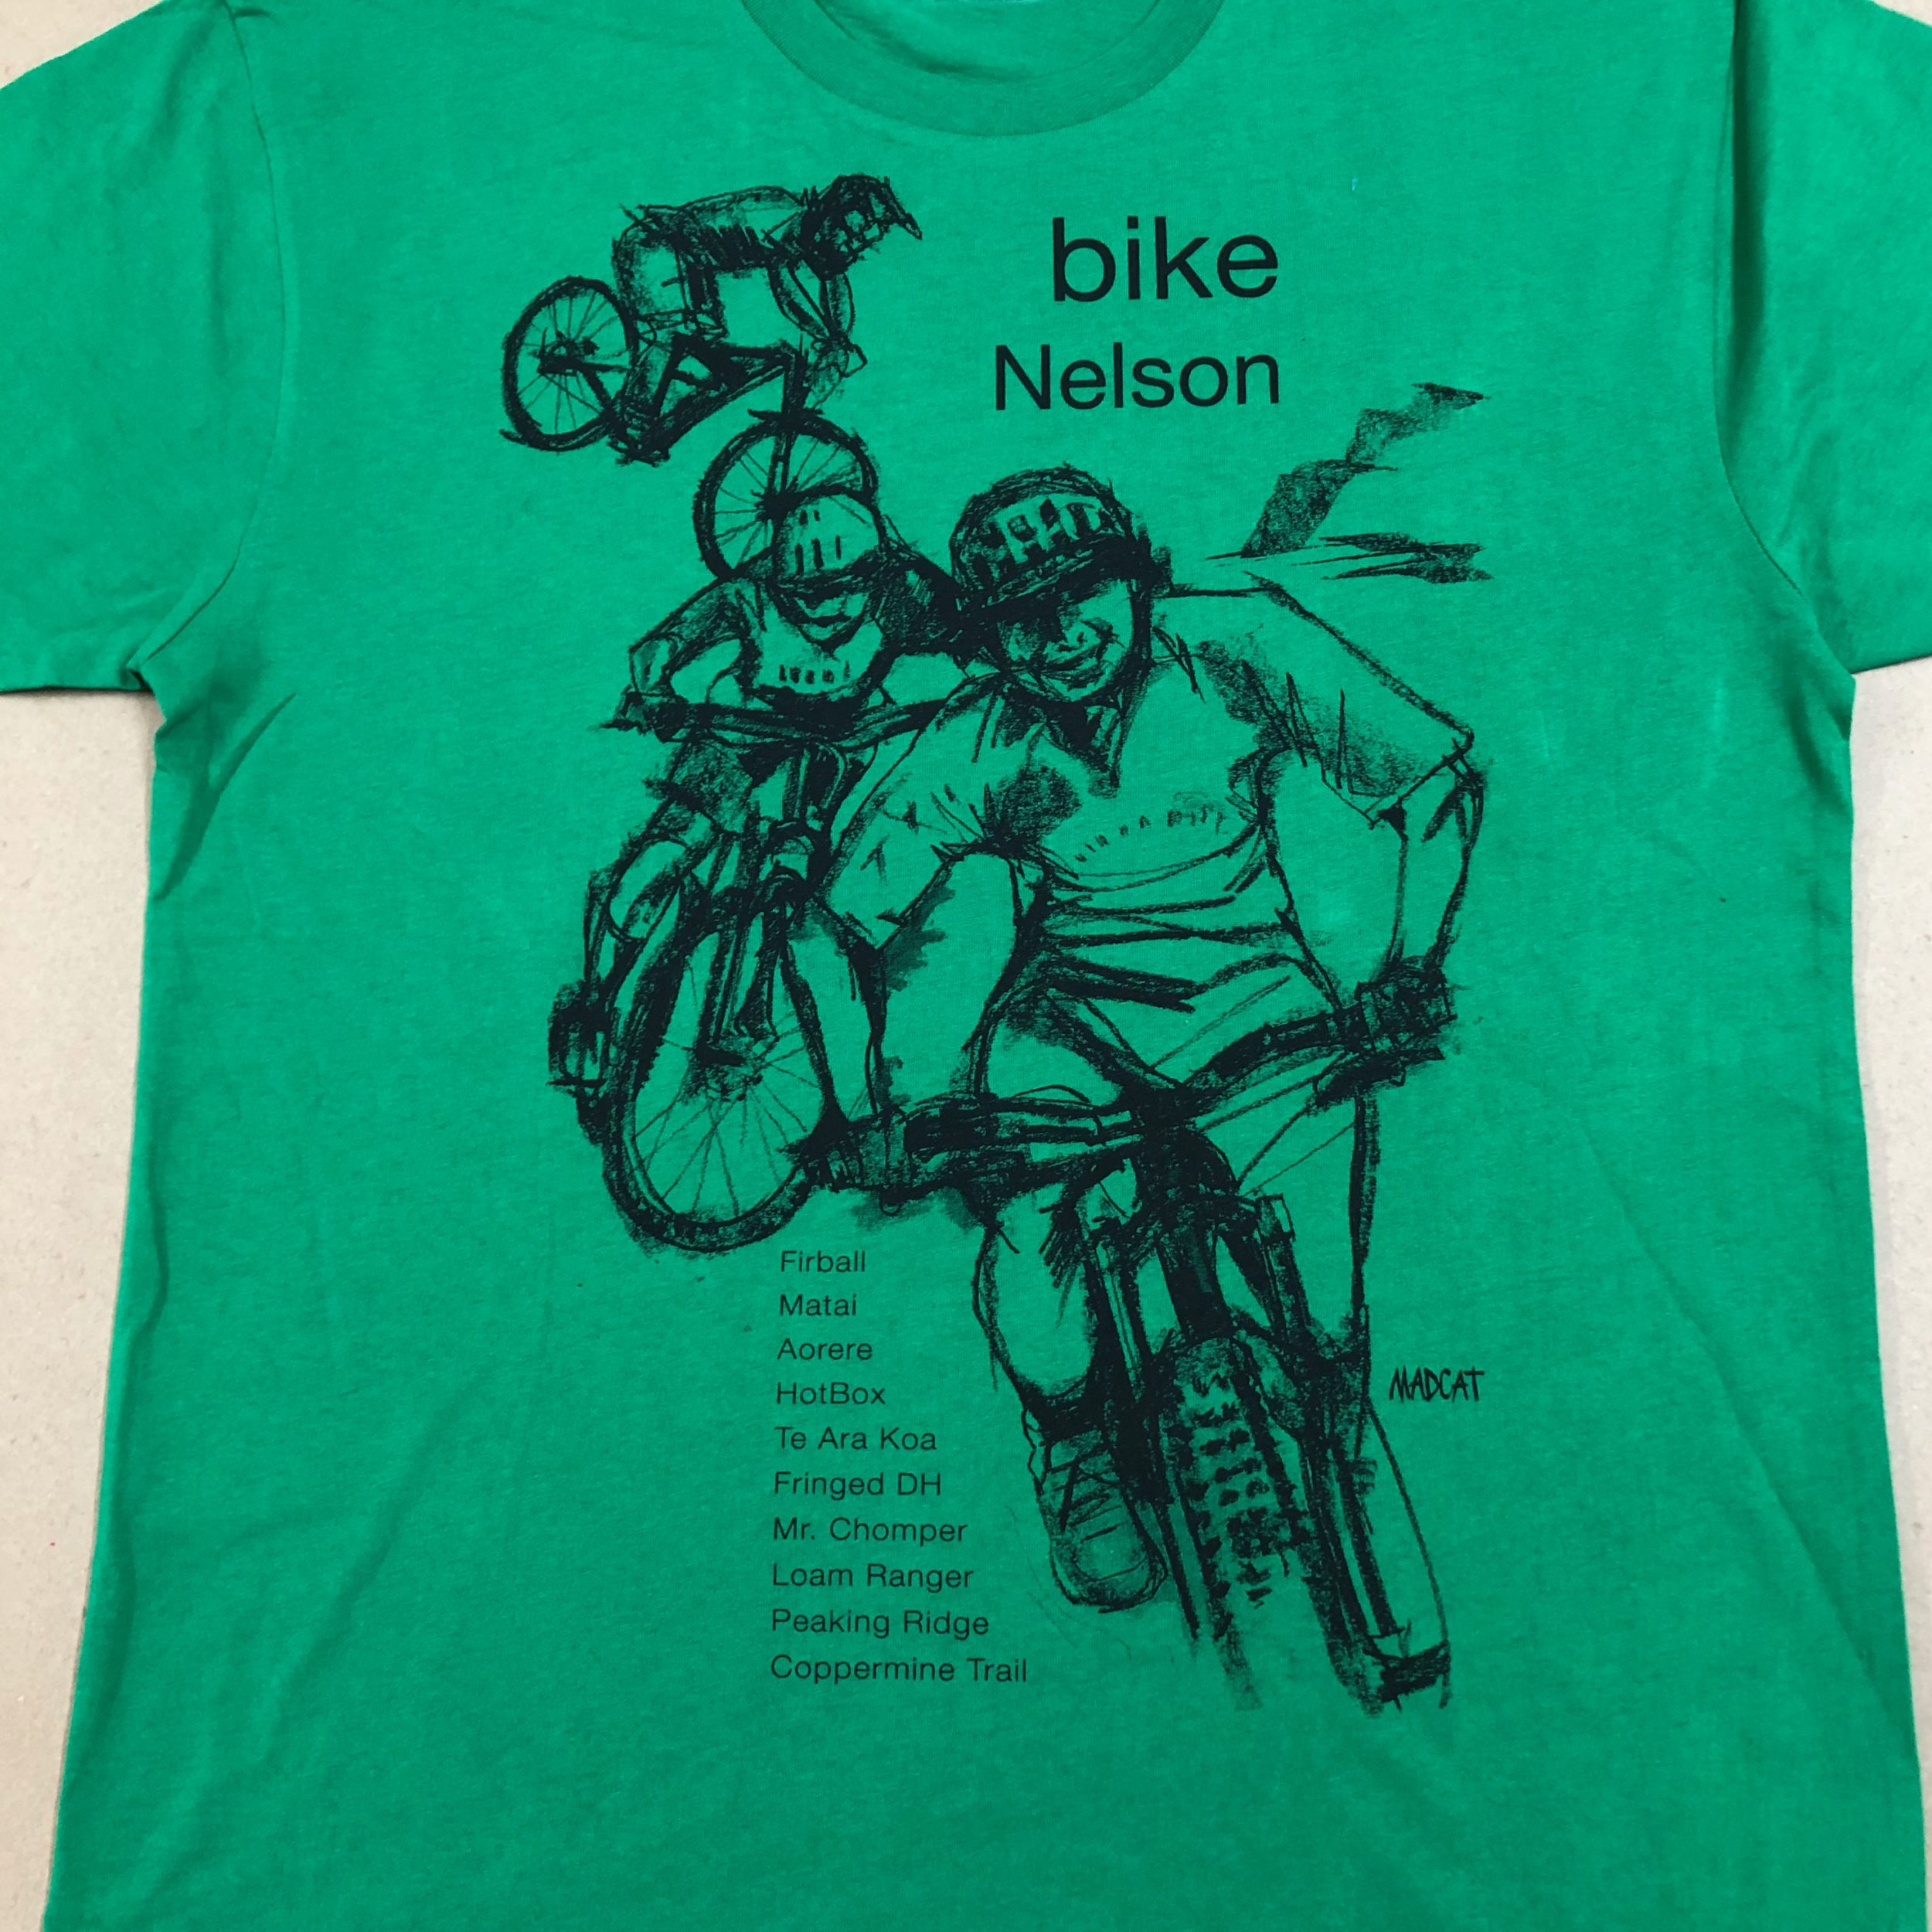 Bike Nelson T shirt for Men, Green